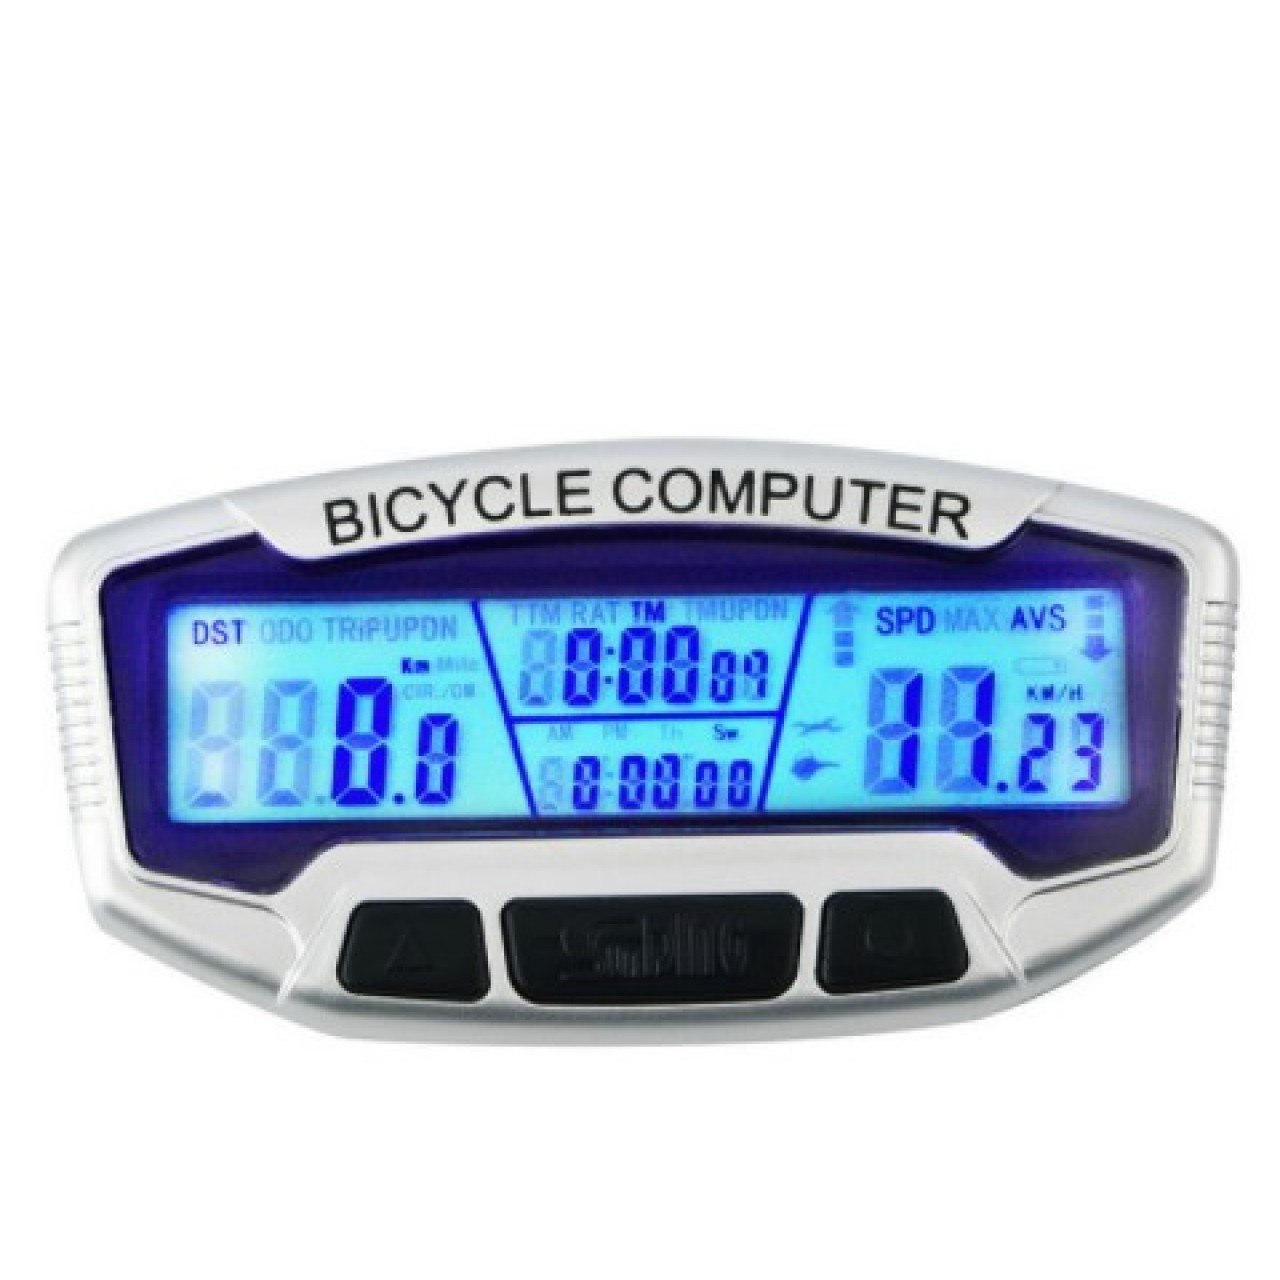 Κοντέρ ποδηλάτου ψηφιακό με θερμόμετρο - Ρολόι - Χρονόμετρο - 2755 - Ασημί - OEM